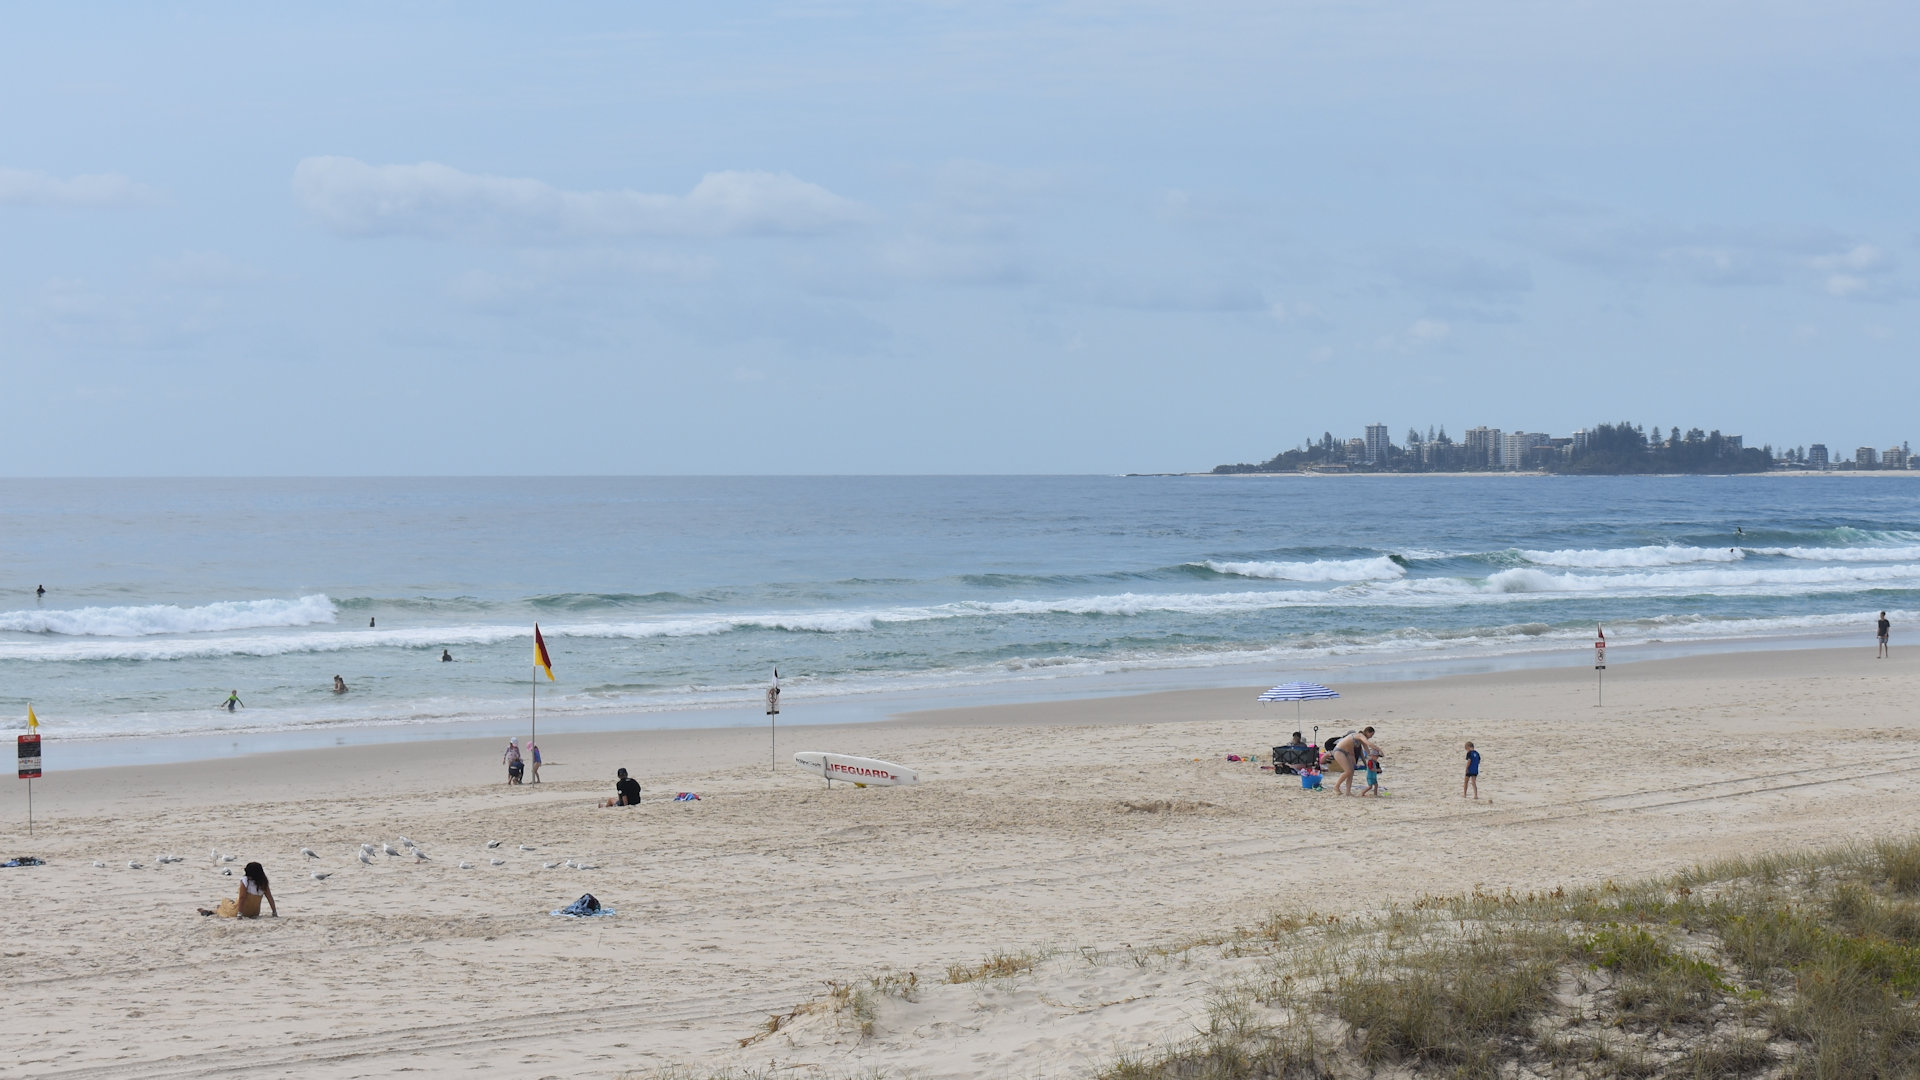 Tugun Beach Gold Coast Queensland, surf life saving board near flags and Coolangatta in the background